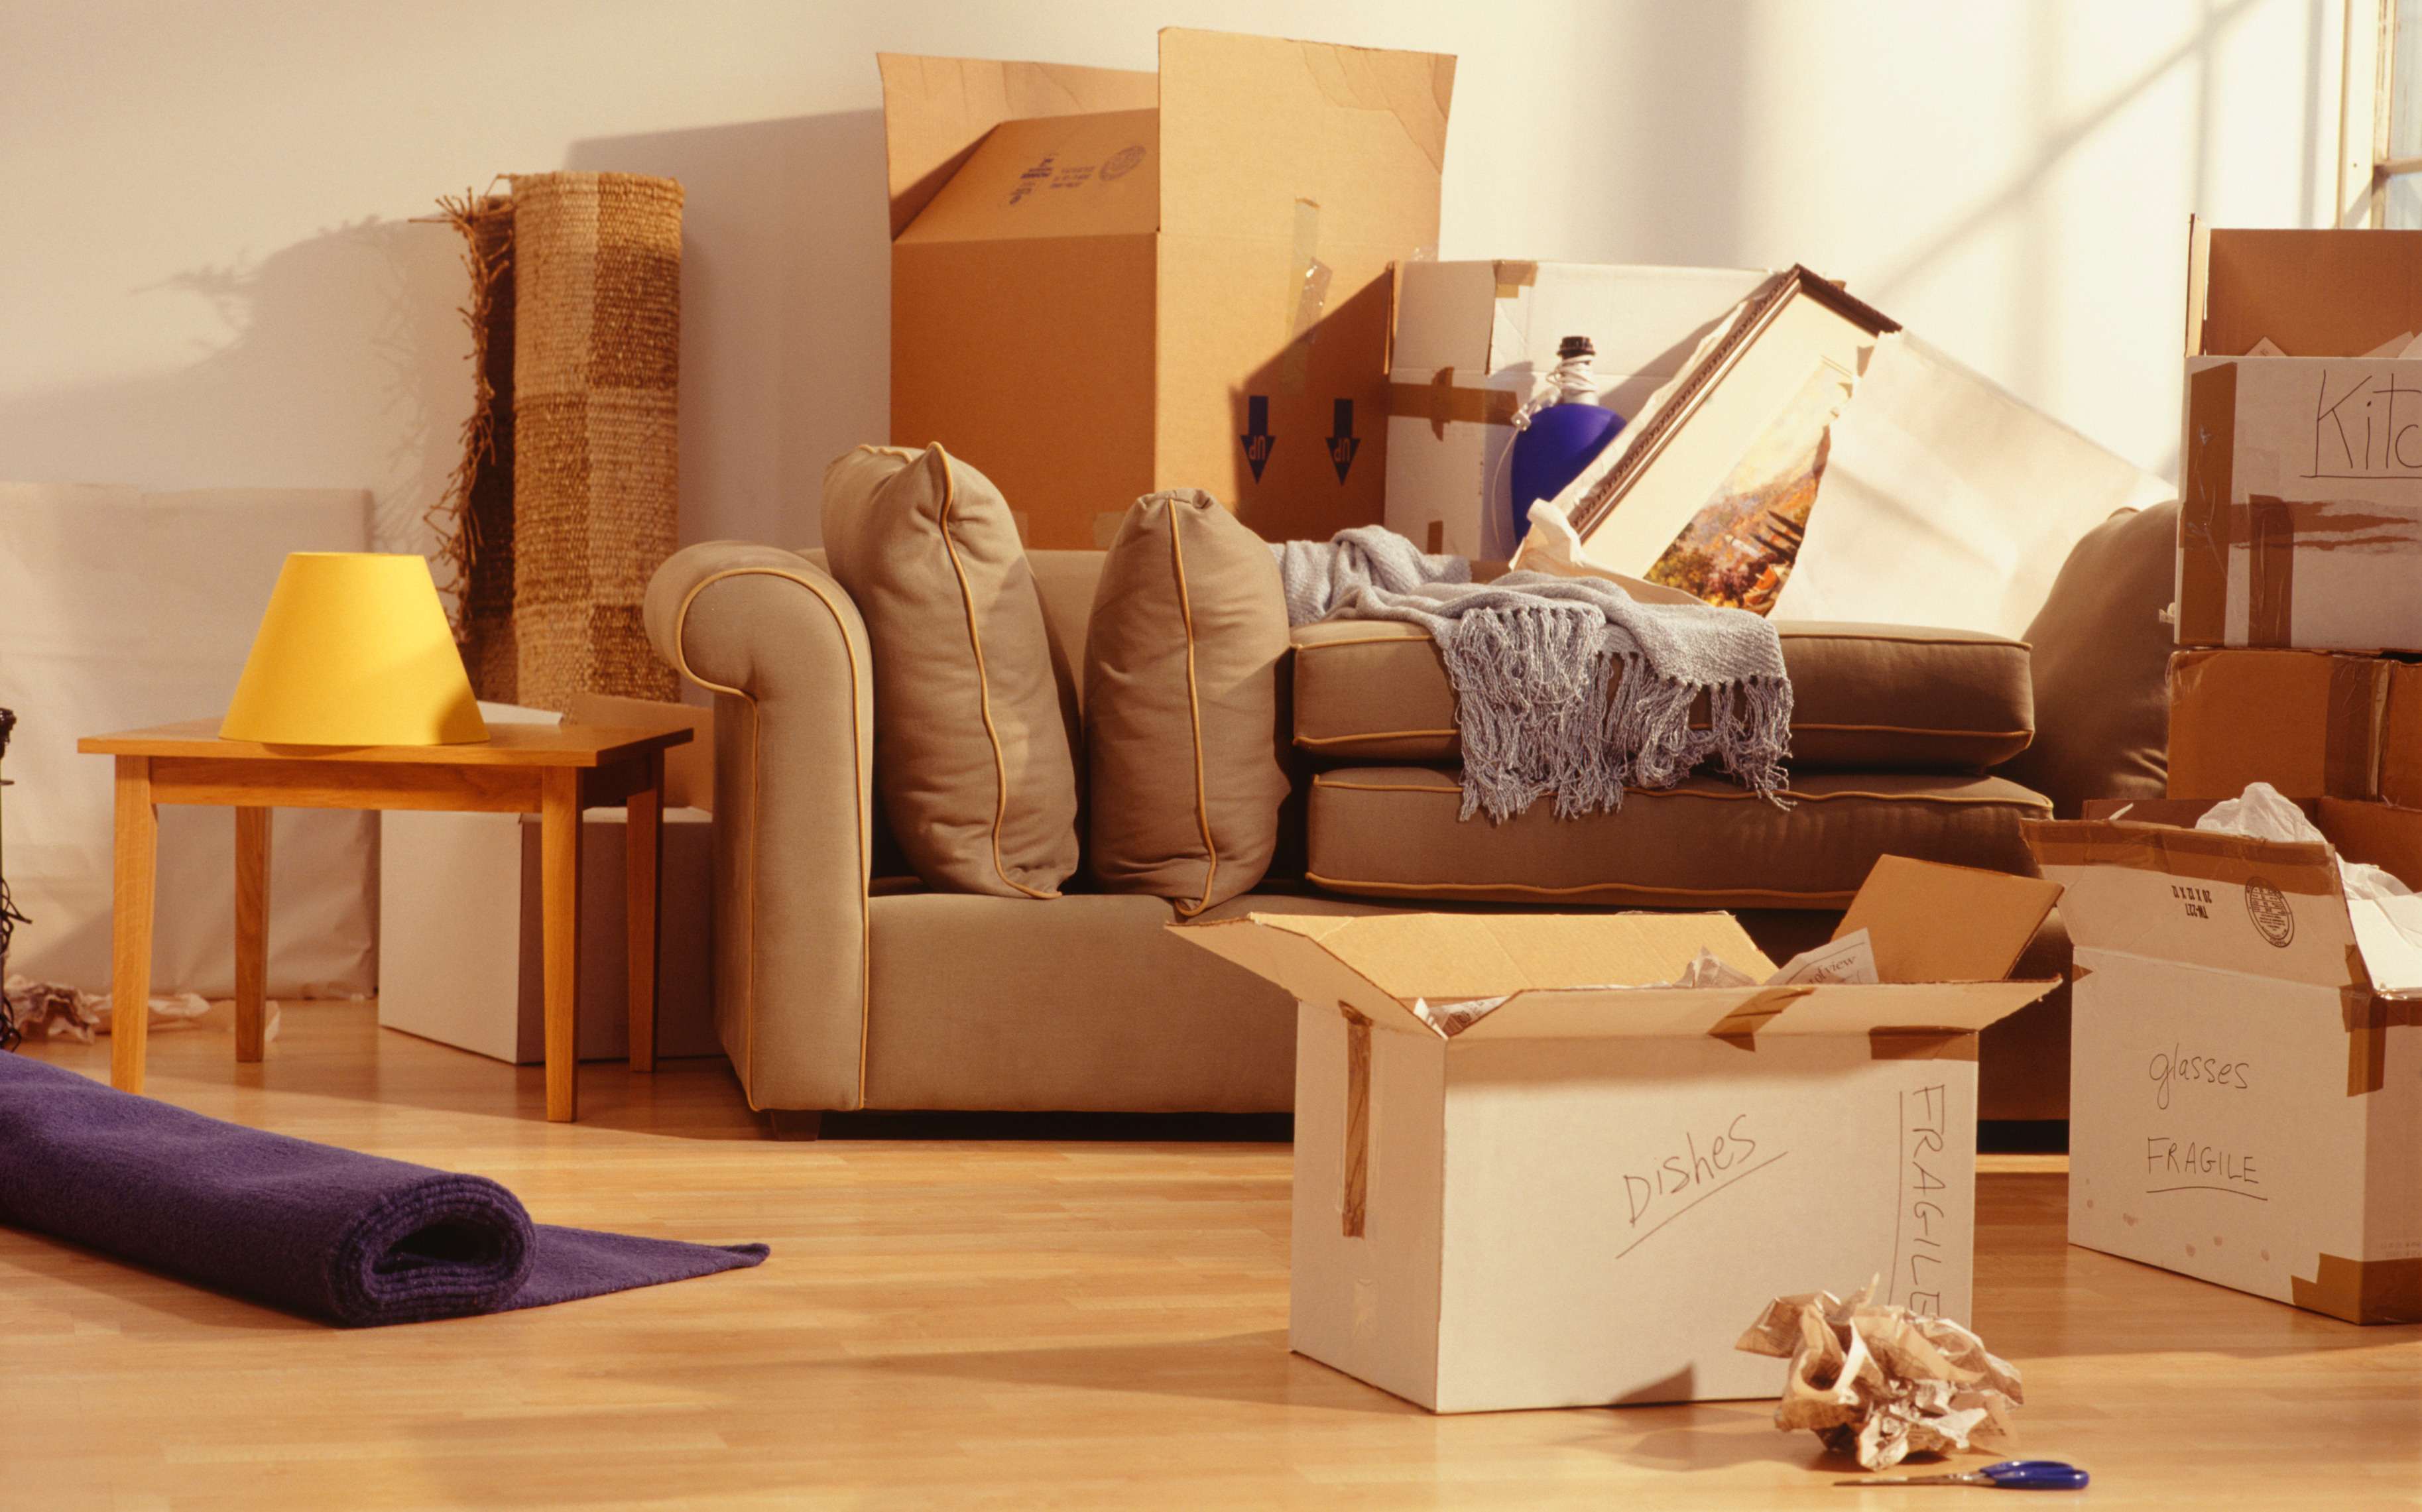 Сколько стоит квартирный переезд. Упаковка мебели. Коробки в квартире. Упаковка вещей для переезда. Красивая упаковка для мебели.